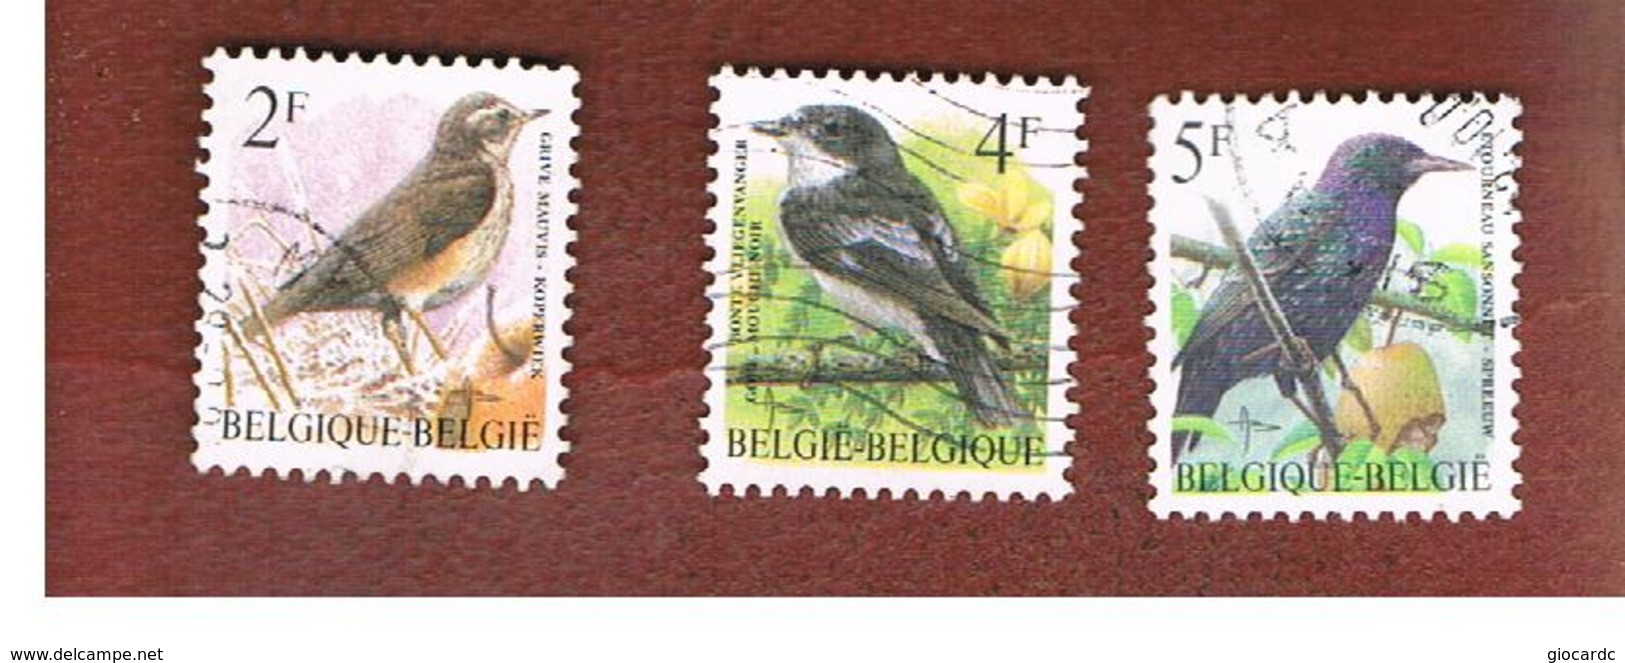 BELGIO (BELGIUM)   - SG 3304.3307  - 1996 BIRDS    - USED - Gebruikt